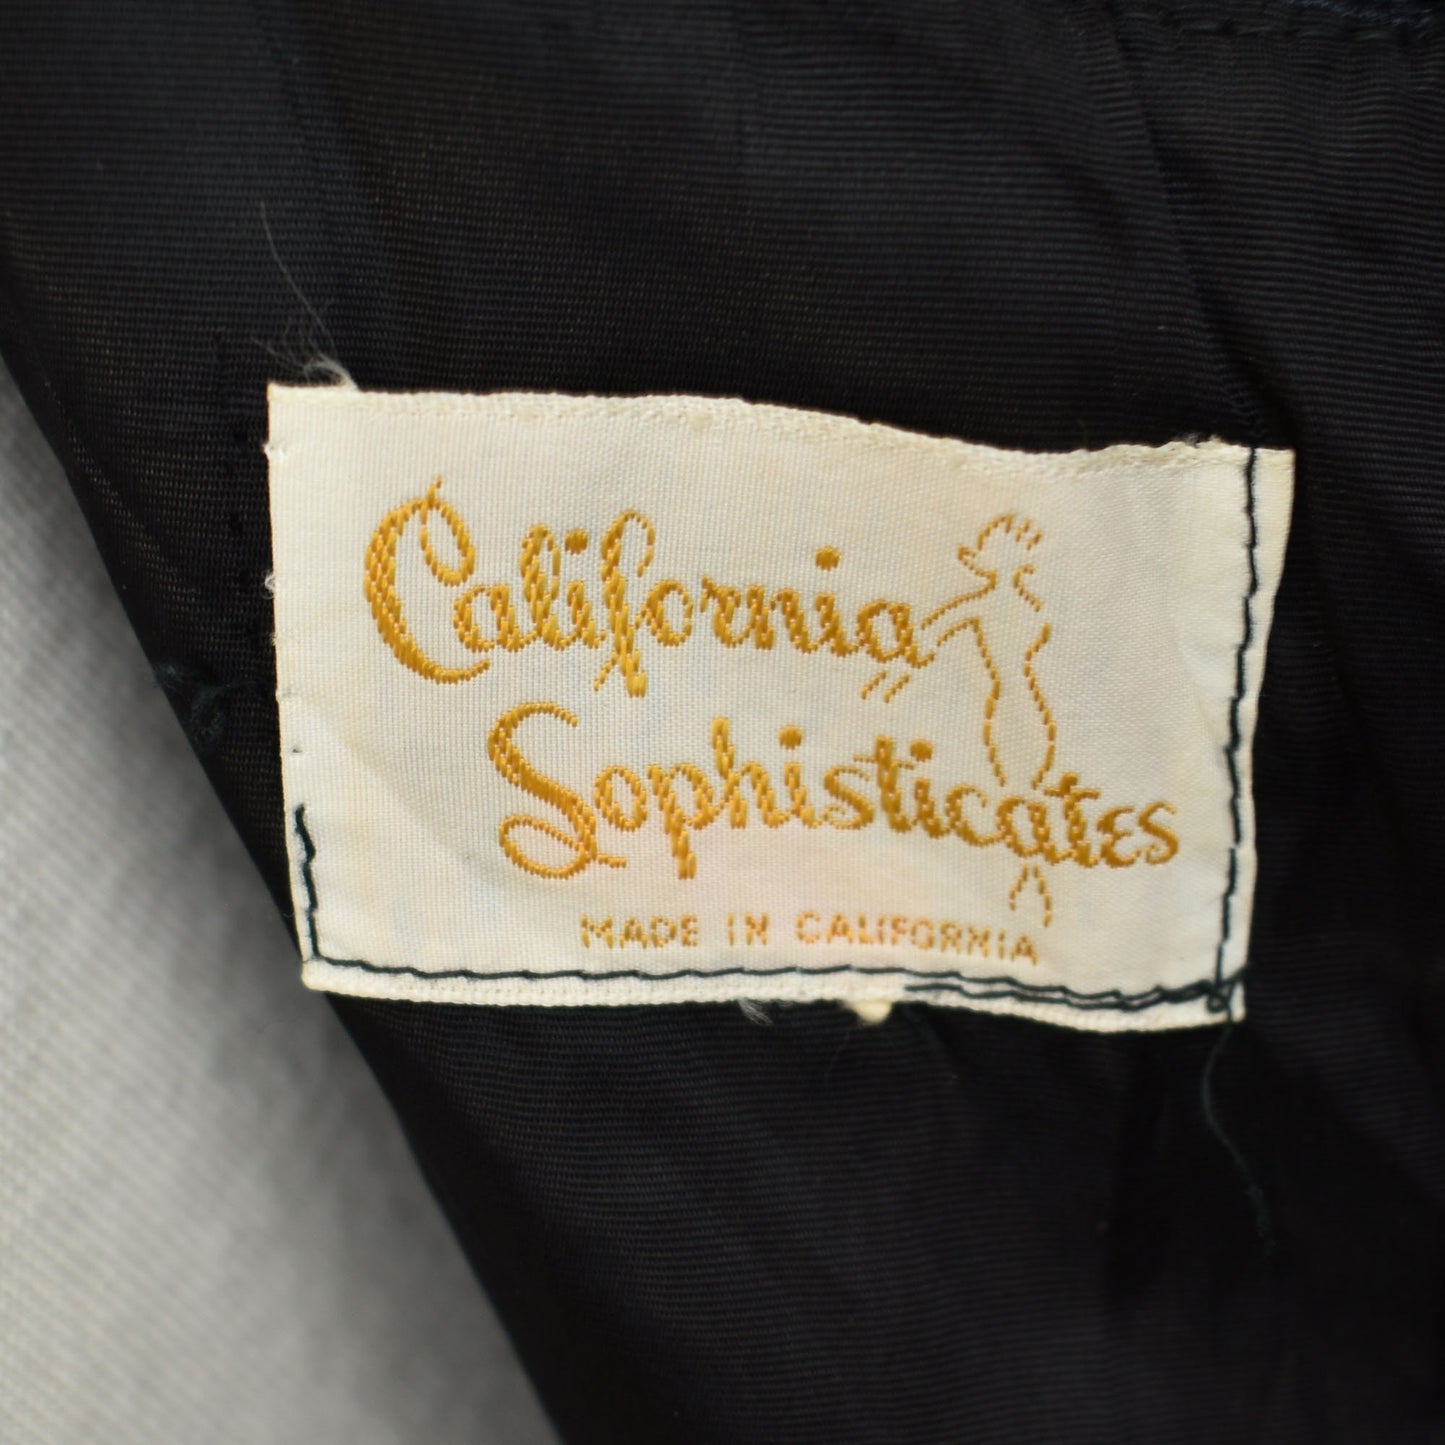 50s Vintage Velvet Sex Kitten Dress in Black by California Sophisticates - Vintage size 13 - Fits Like Medium